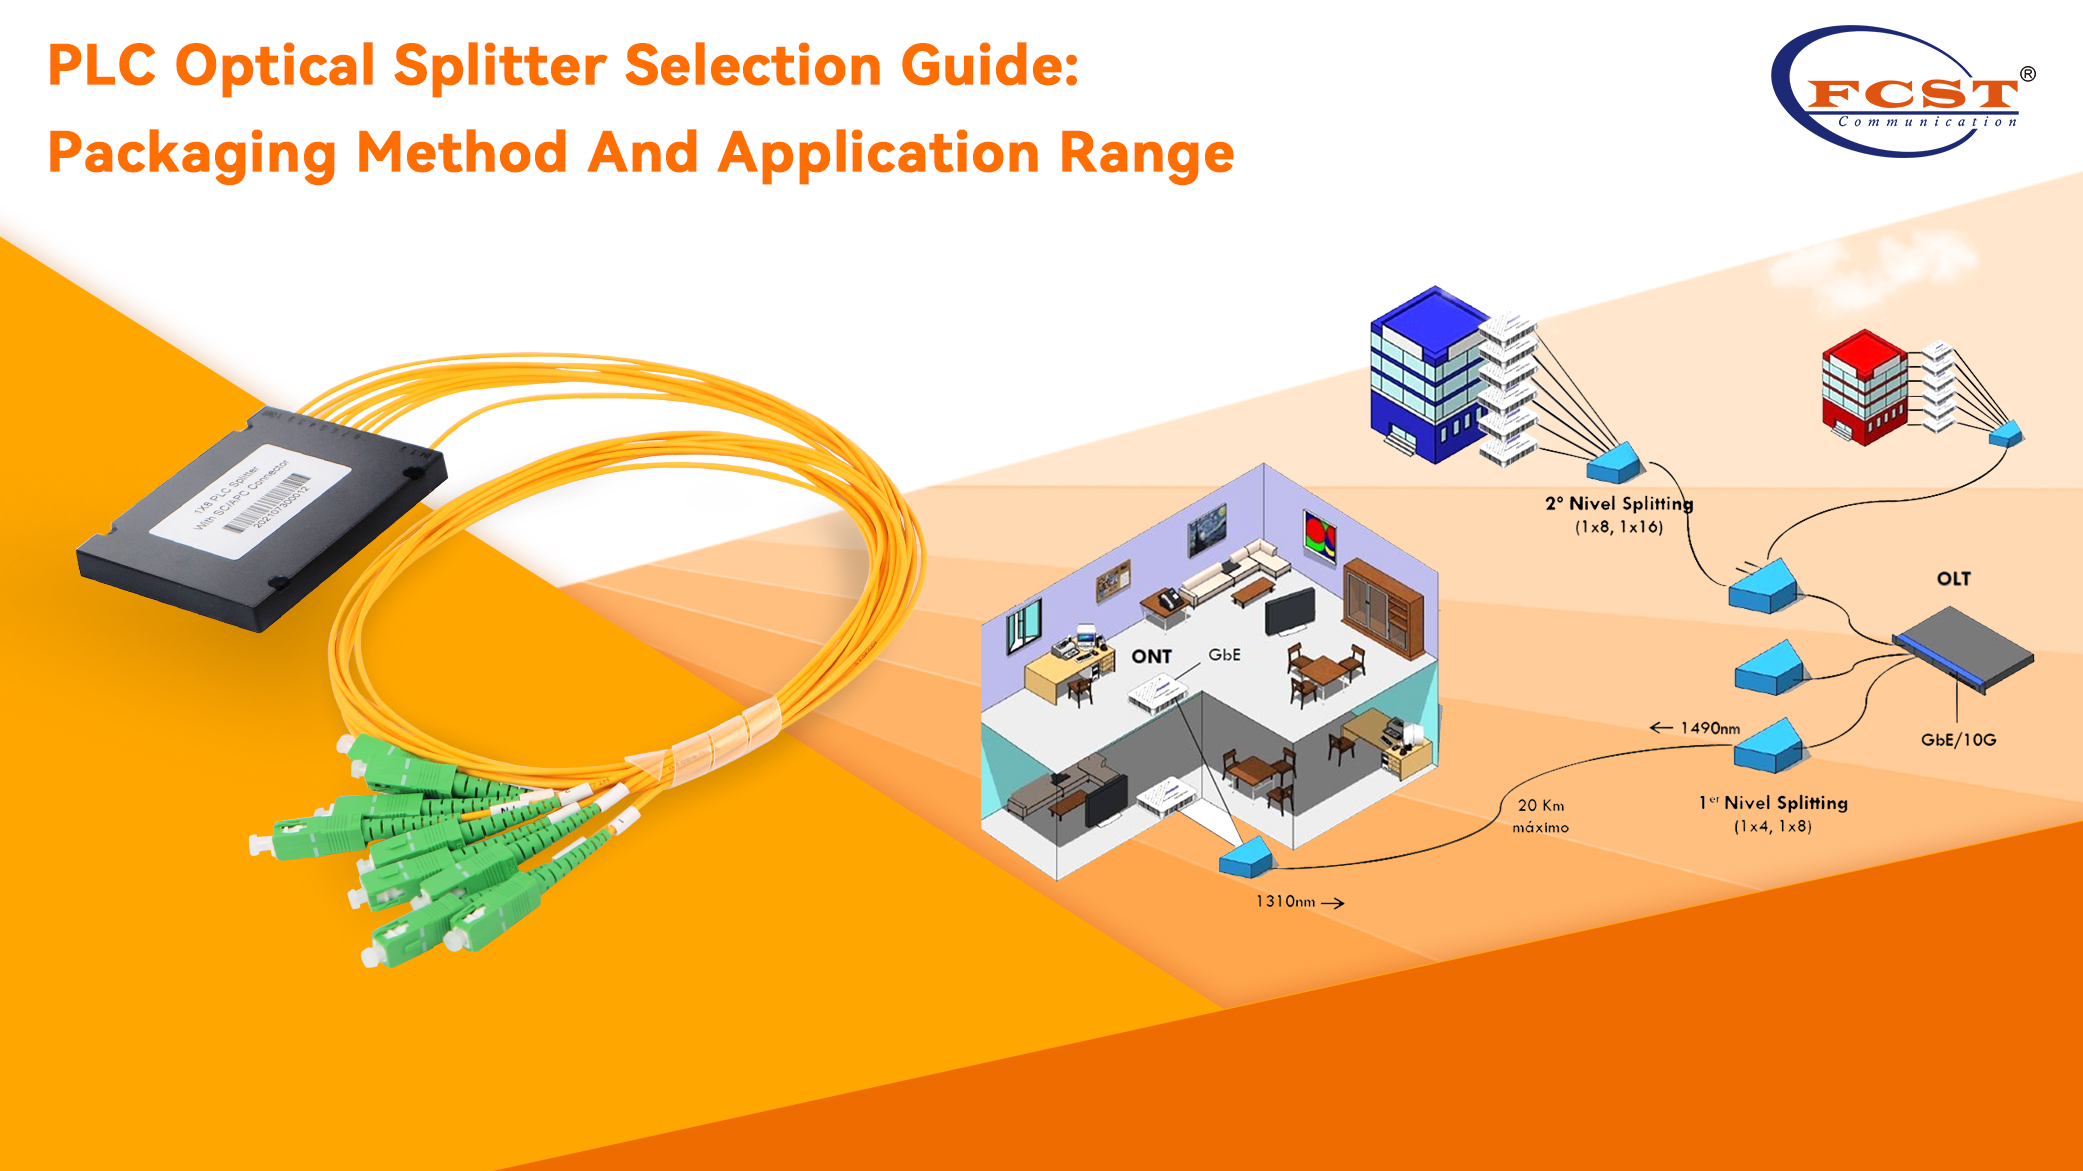 Guide de sélection de séparation optique PLC: Méthode d'emballage et plage d'applications